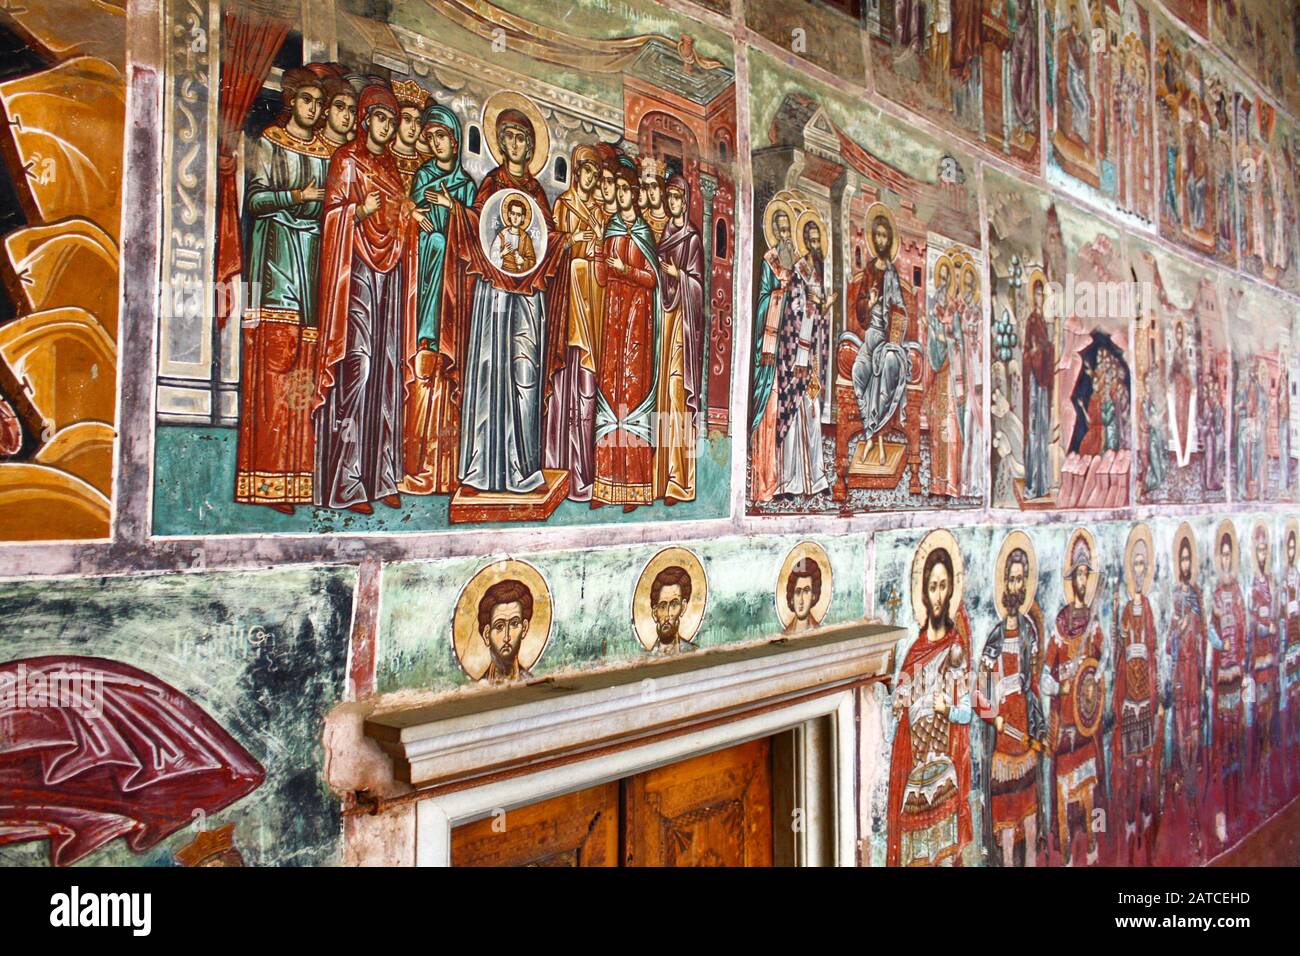 Murs couverts d'icônes byzantines. Le Saint et le Grand Monastère de Vatopedi – un monastère orthodoxe oriental sur le mont Athos, Grèce. Banque D'Images